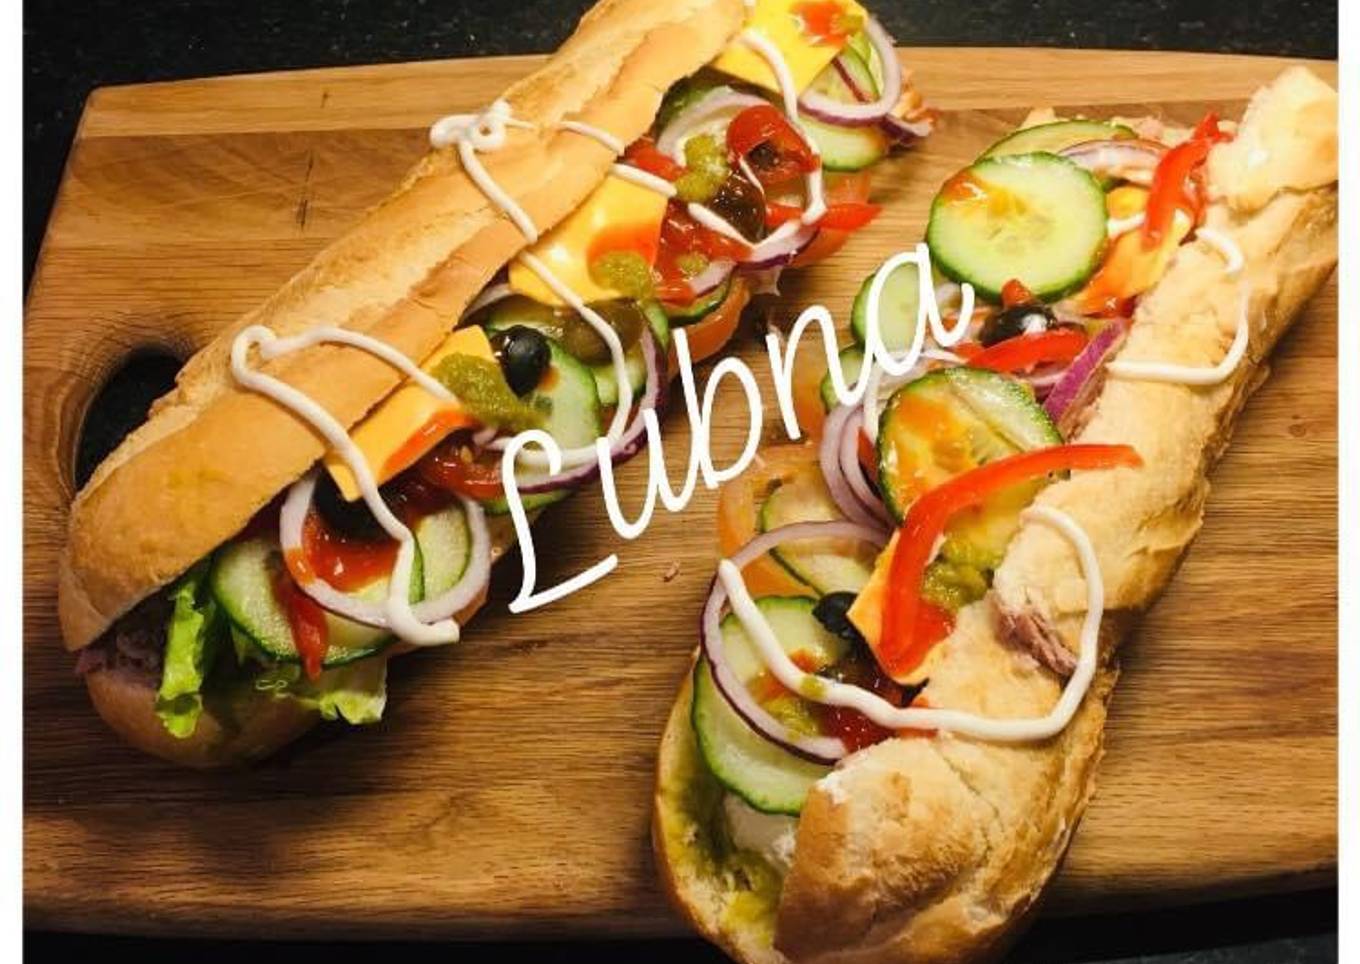 Subway style sandwich: